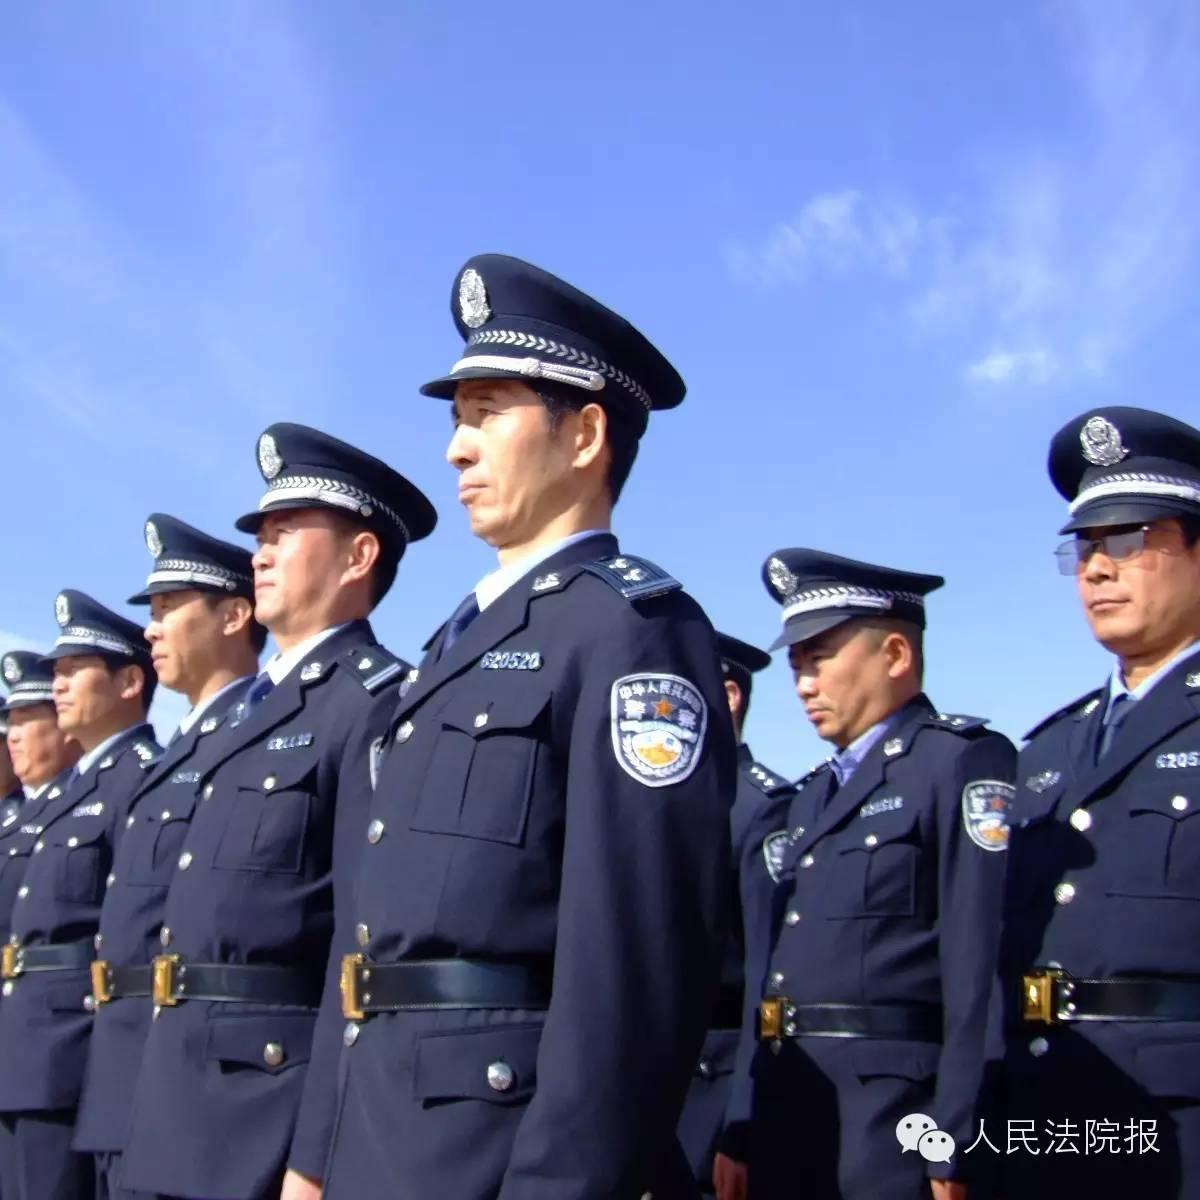 【法警技能大比武】上海法院:法警大比武总动员